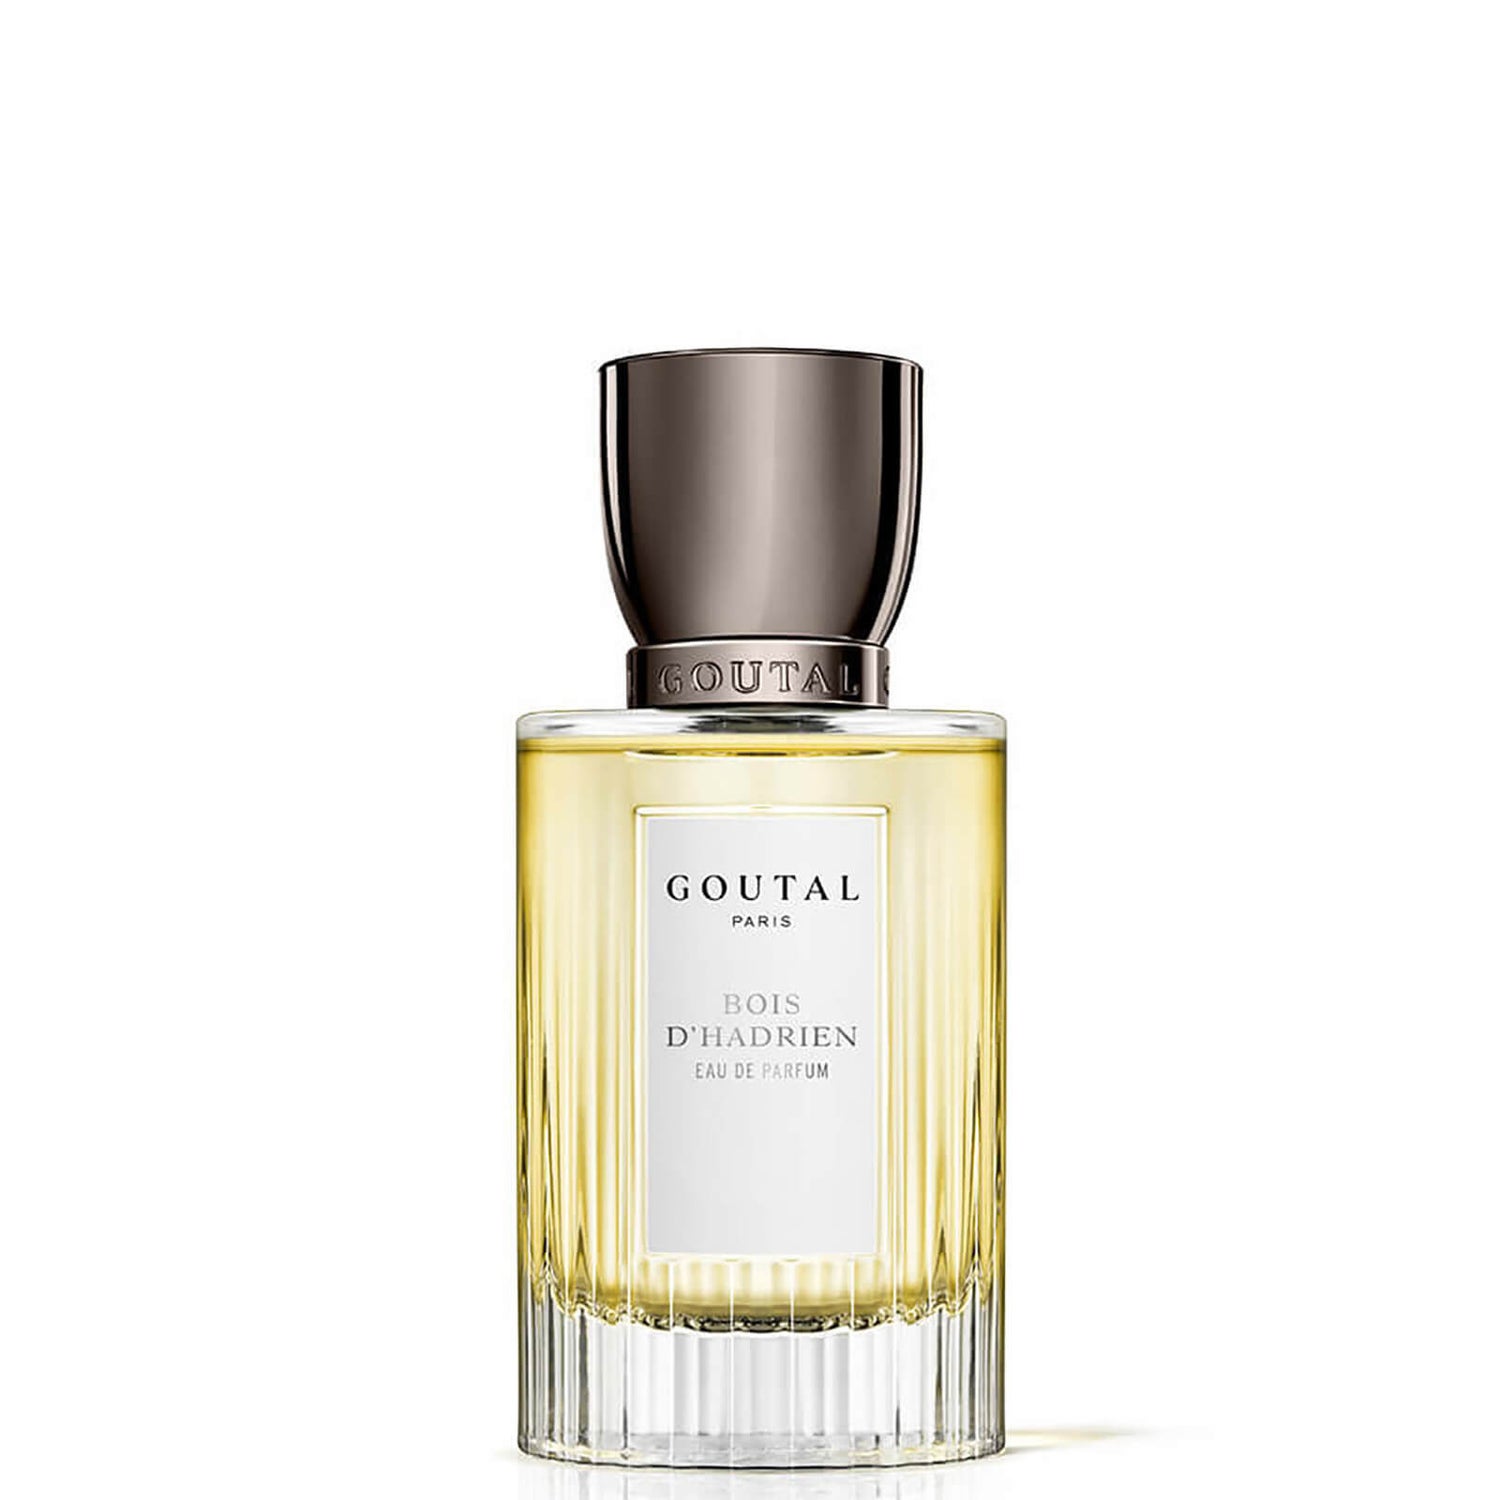 Goutal Bois d'Hadrien Mixed Eau de Parfum - 50ml